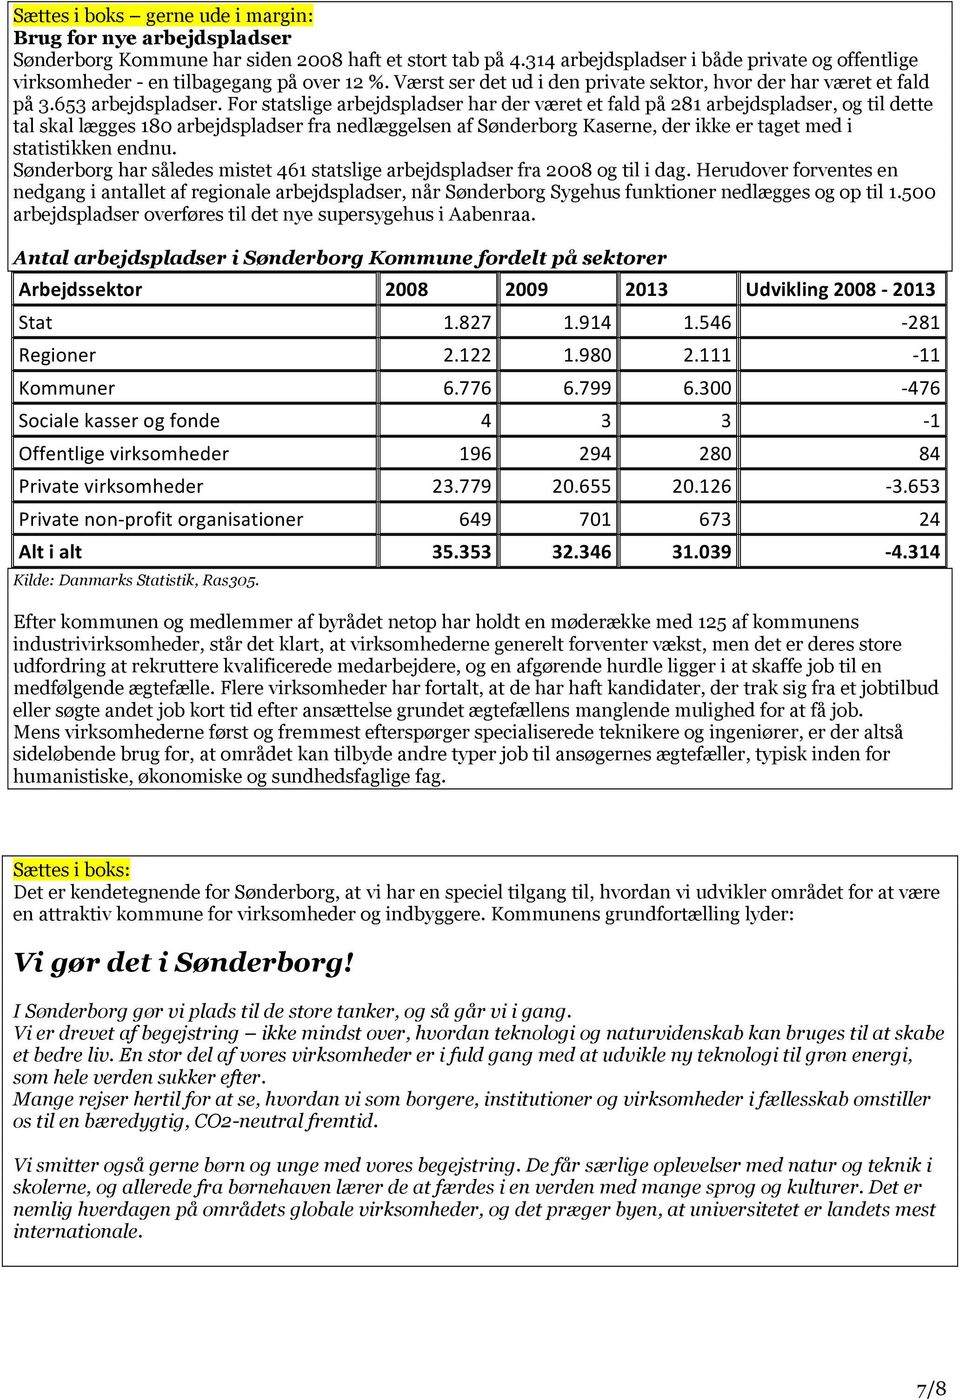 For statslige arbejdspladser har der været et fald på 281 arbejdspladser, og til dette tal skal lægges 180 arbejdspladser fra nedlæggelsen af Sønderborg Kaserne, der ikke er taget med i statistikken